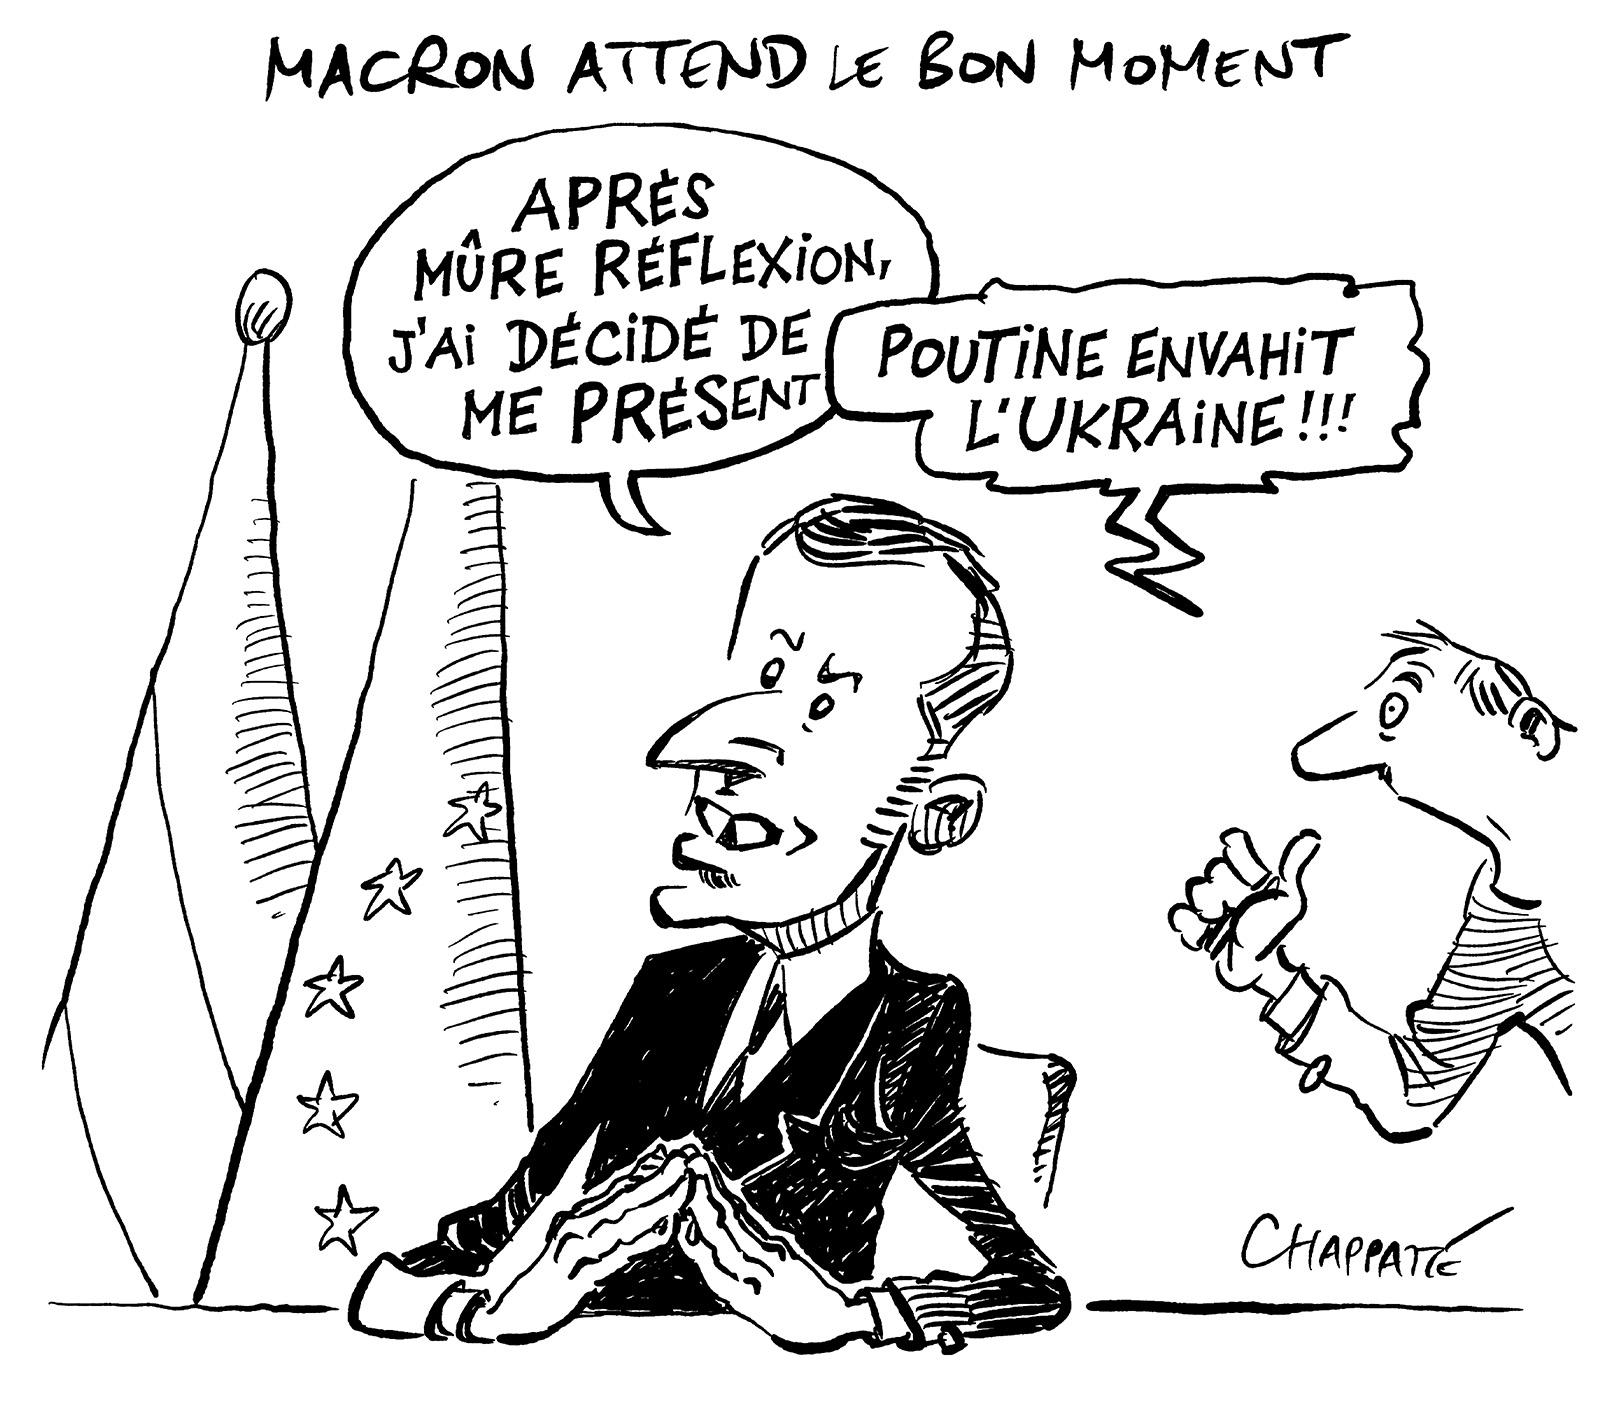 Macron attend le bon moment